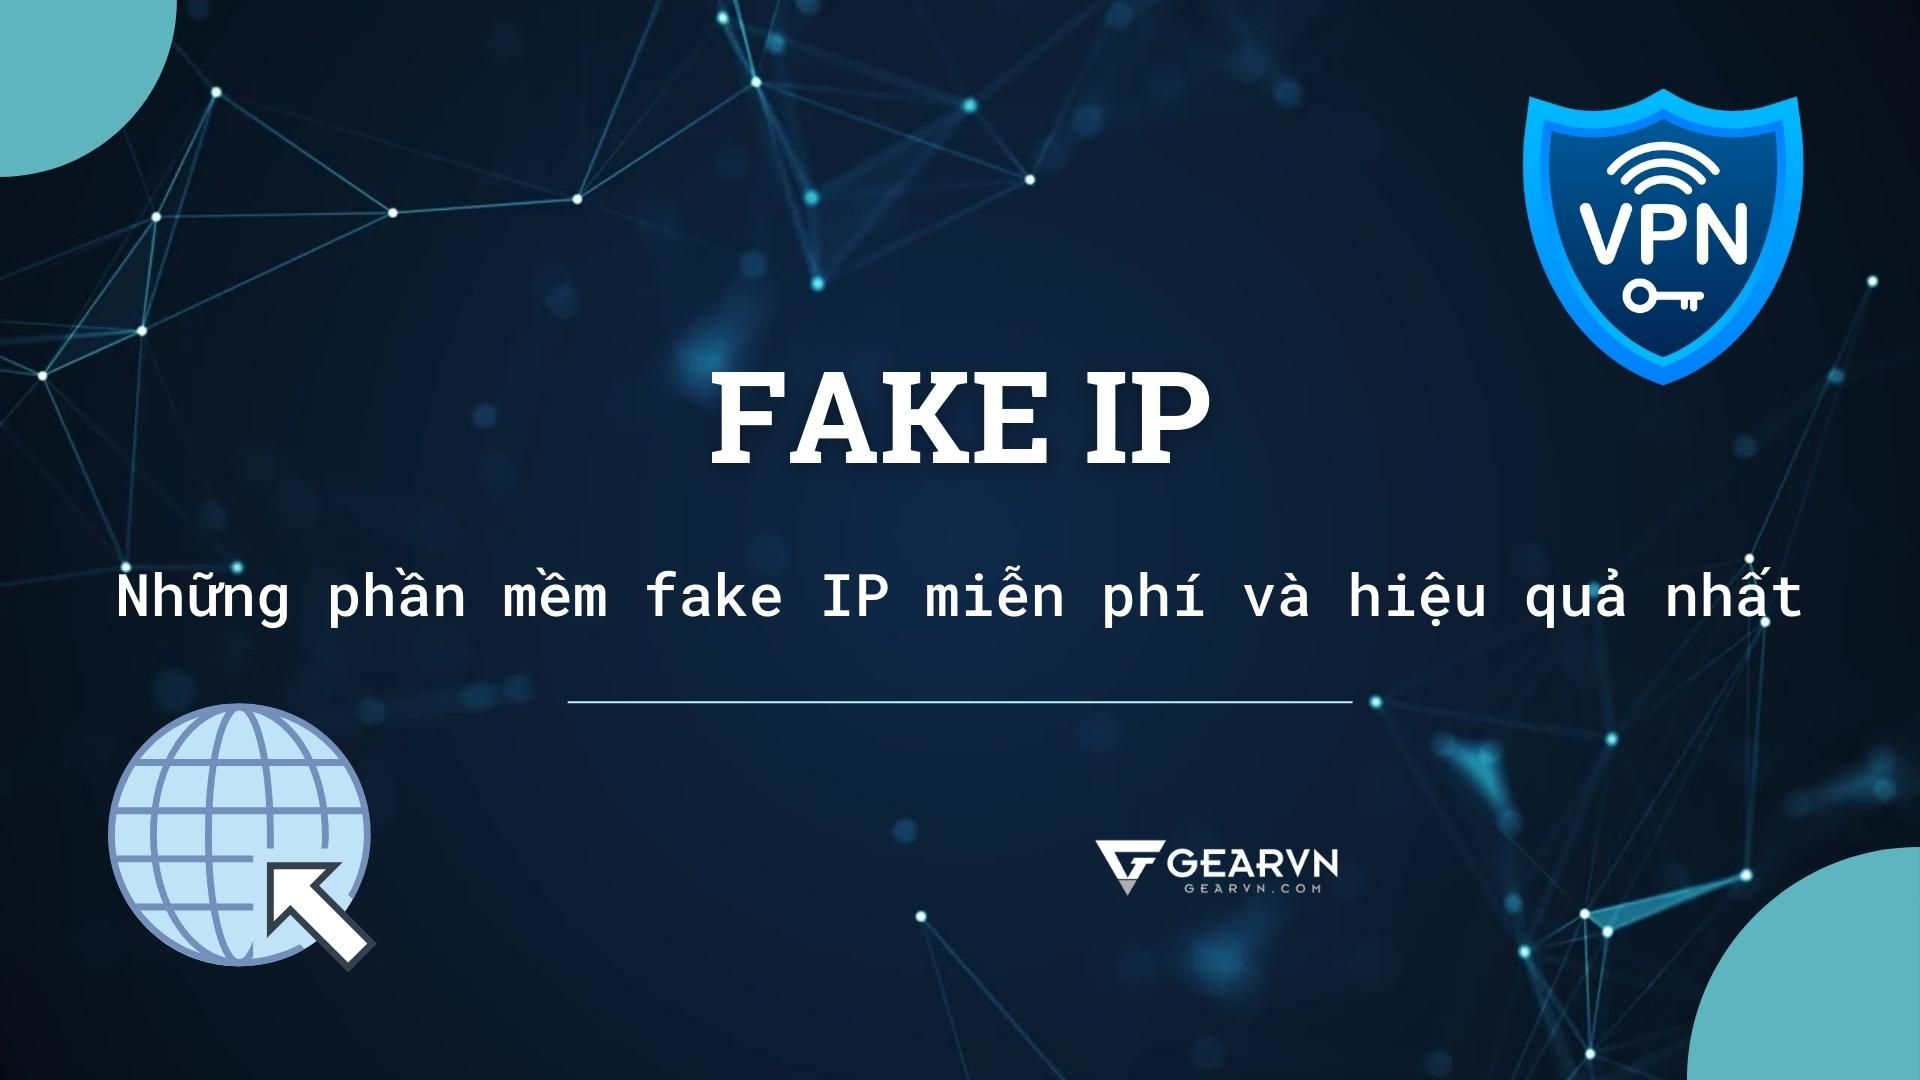 Fake IP là gì? Chia sẻ những phần mềm fake IP miễn phí và hiệu quả nhất hiện nay